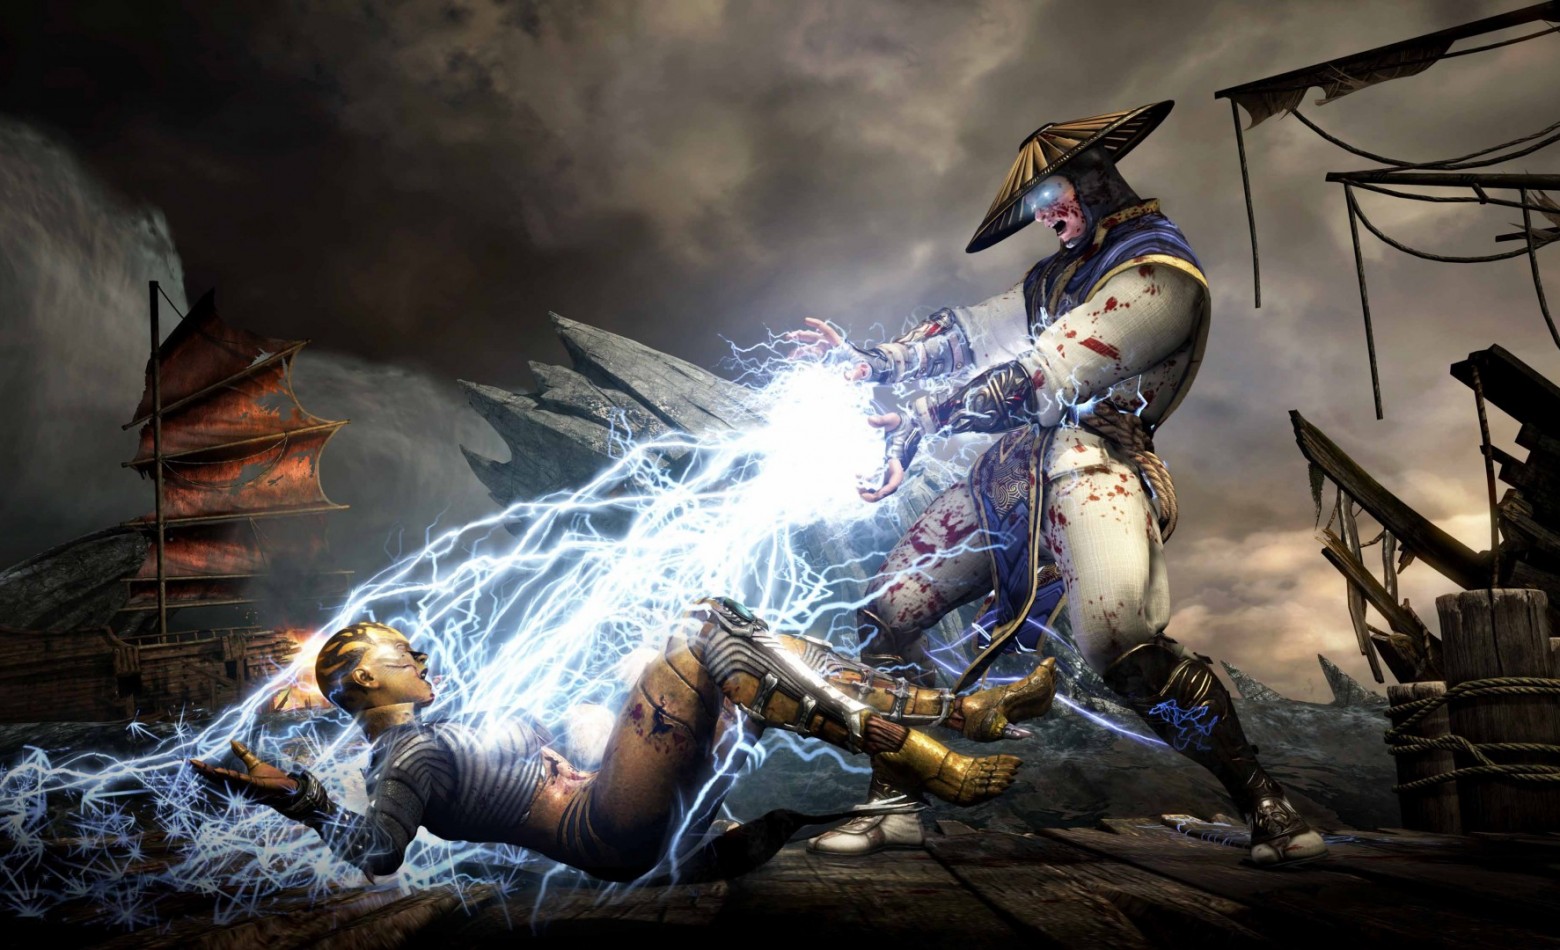 Criador afirma que preços de Mortal Kombat X no Steam estão errados